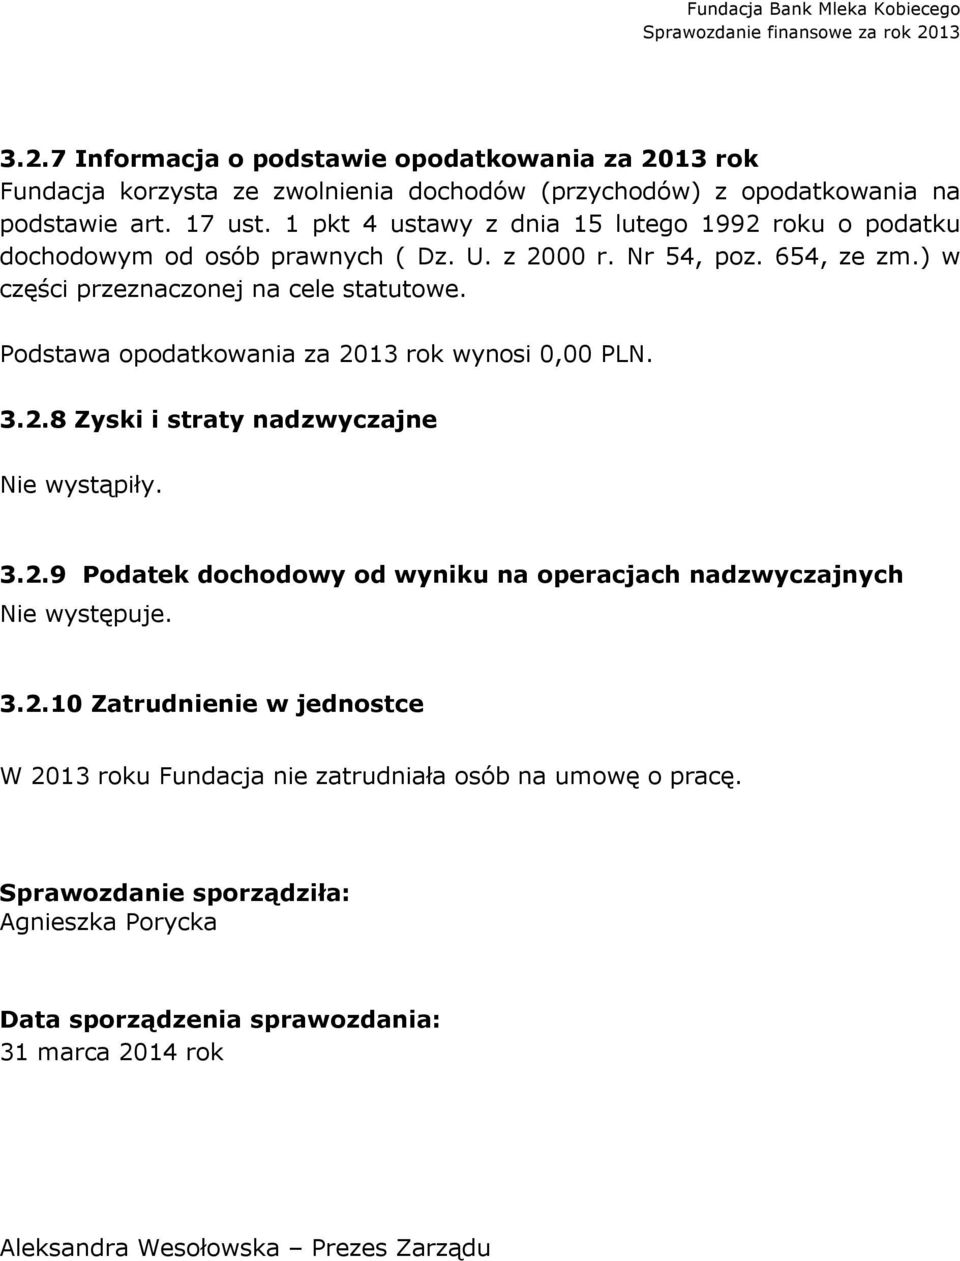 Podstawa opodatkowania za 2013 rok wynosi 0,00 PLN. 3.2.8 Zyski i straty nadzwyczajne Nie wystąpiły. 3.2.9 Podatek dochodowy od wyniku na operacjach nadzwyczajnych Nie występuje.